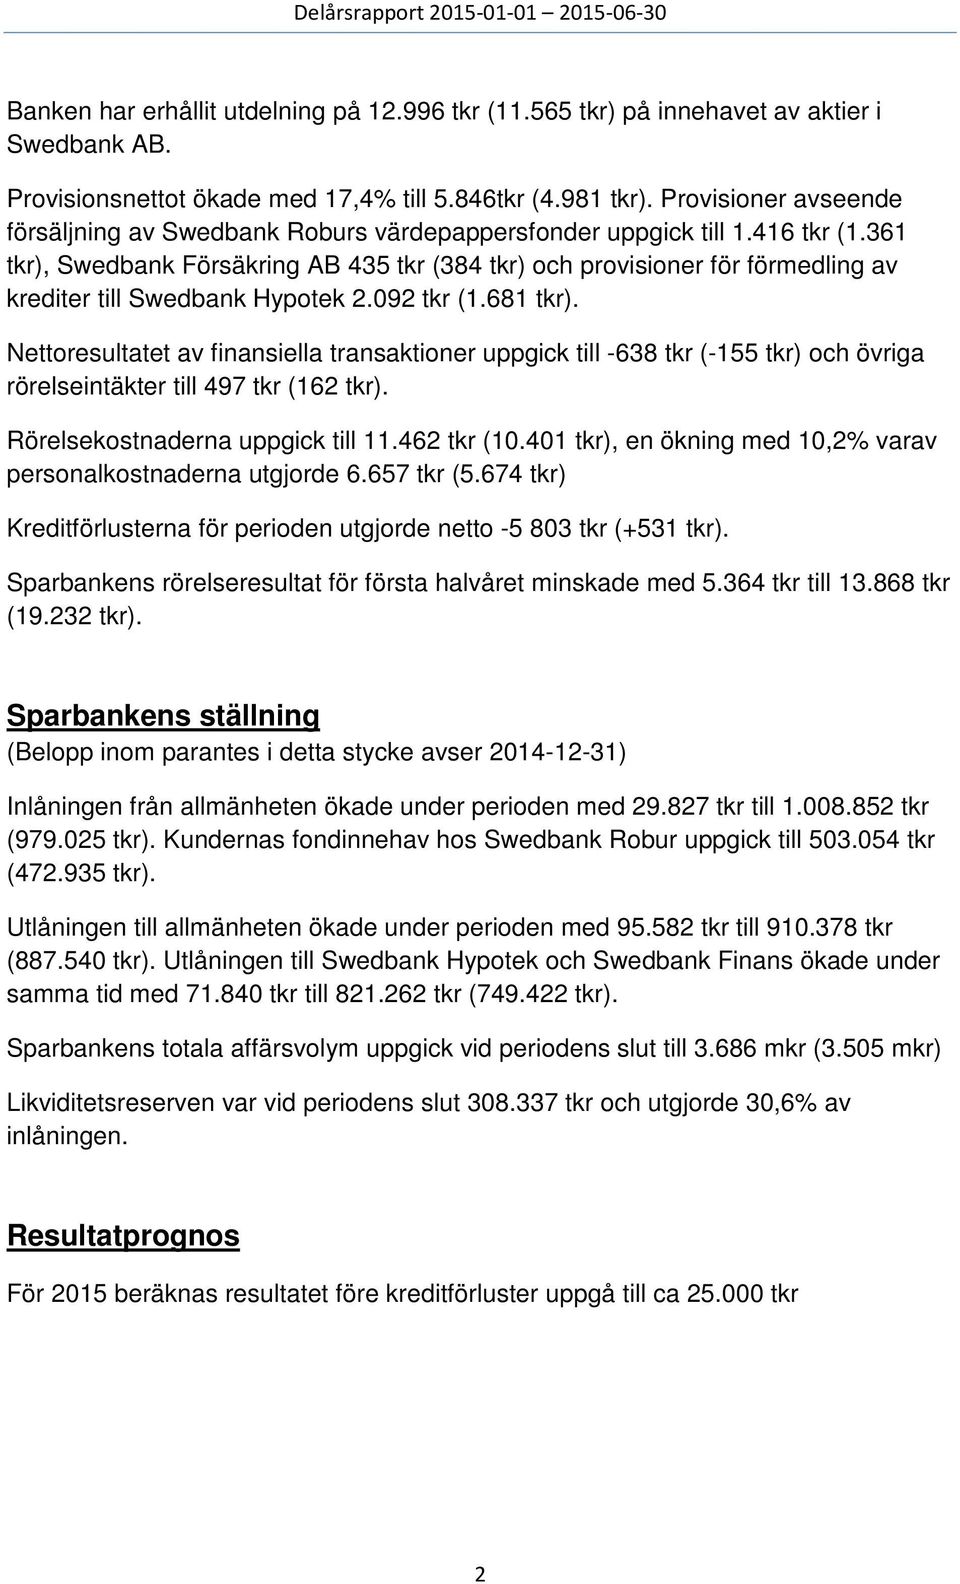 361 tkr), Swedbank Försäkring AB 435 tkr (384 tkr) och provisioner för förmedling av krediter till Swedbank Hypotek 2.092 tkr (1.681 tkr).